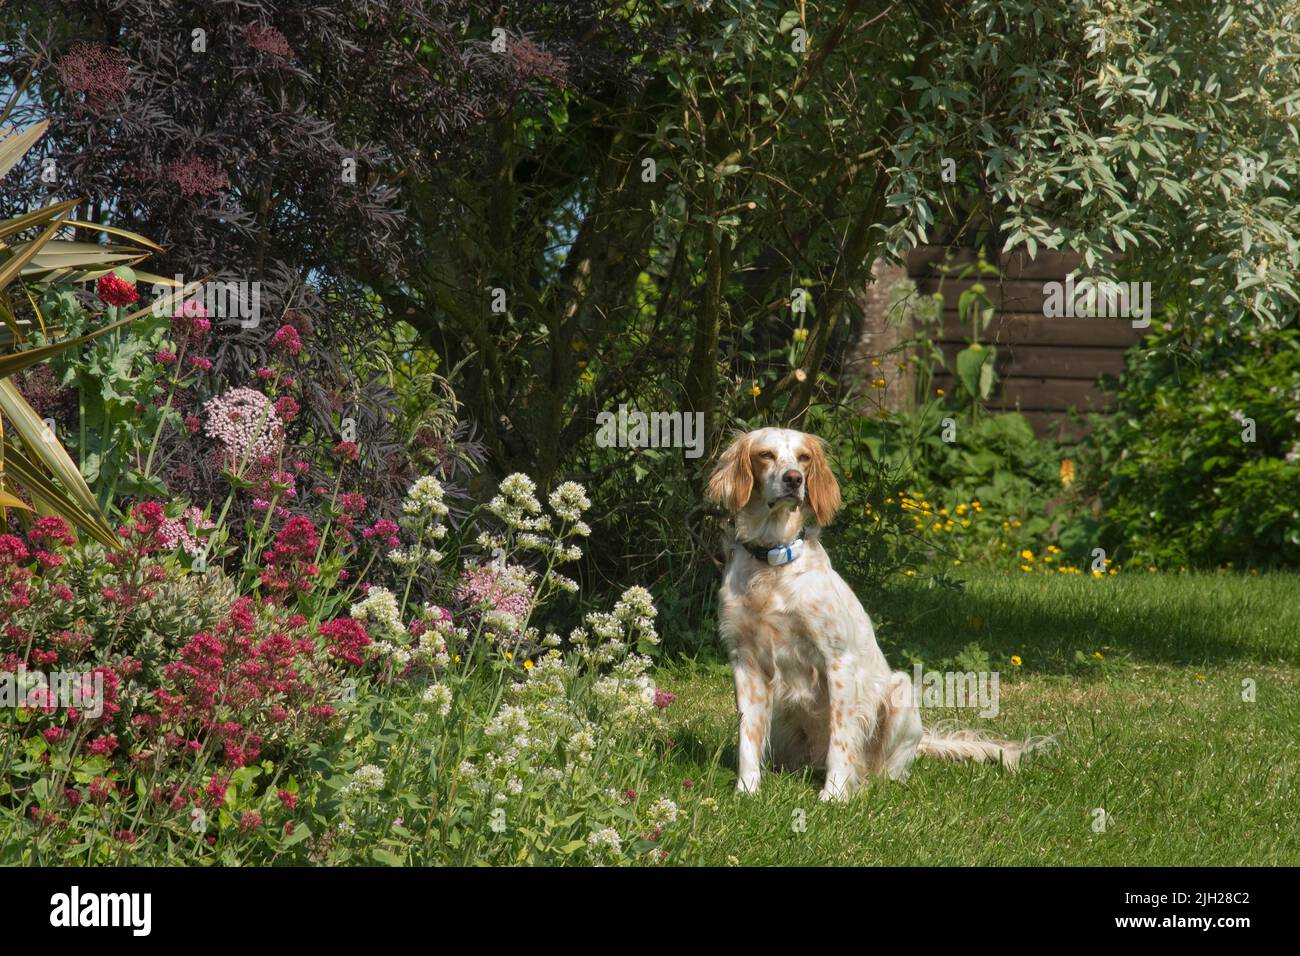 Chien de compagnie anglais assis sur l'herbe de jardin à côté de fleurs rouges, blanches et roses et sous l'observation des arbres, Berkshire, juin Banque D'Images